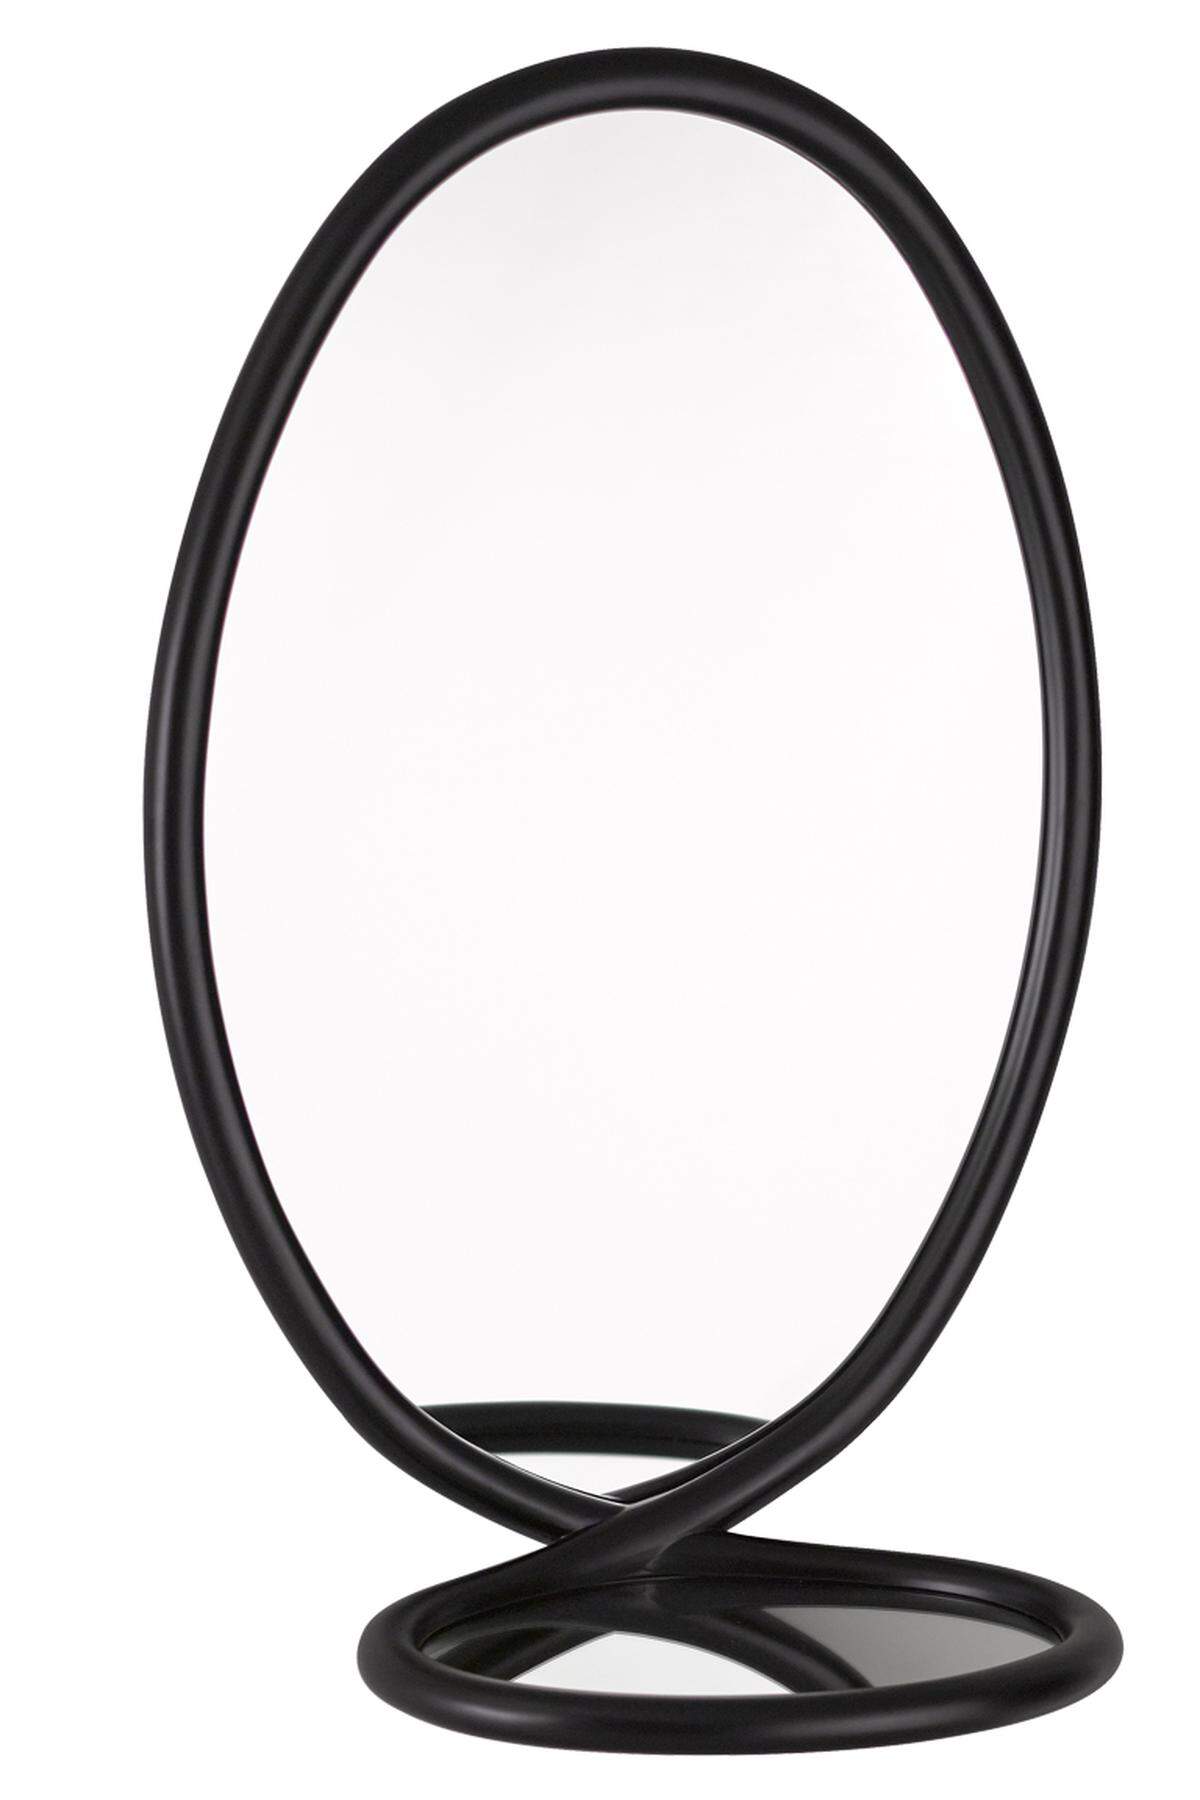 . Für den Hersteller Porro haben die schwedischen Frontdesignerinnen einem Spiegel eine verspielte Schlaufe gebunden: „Loop“.